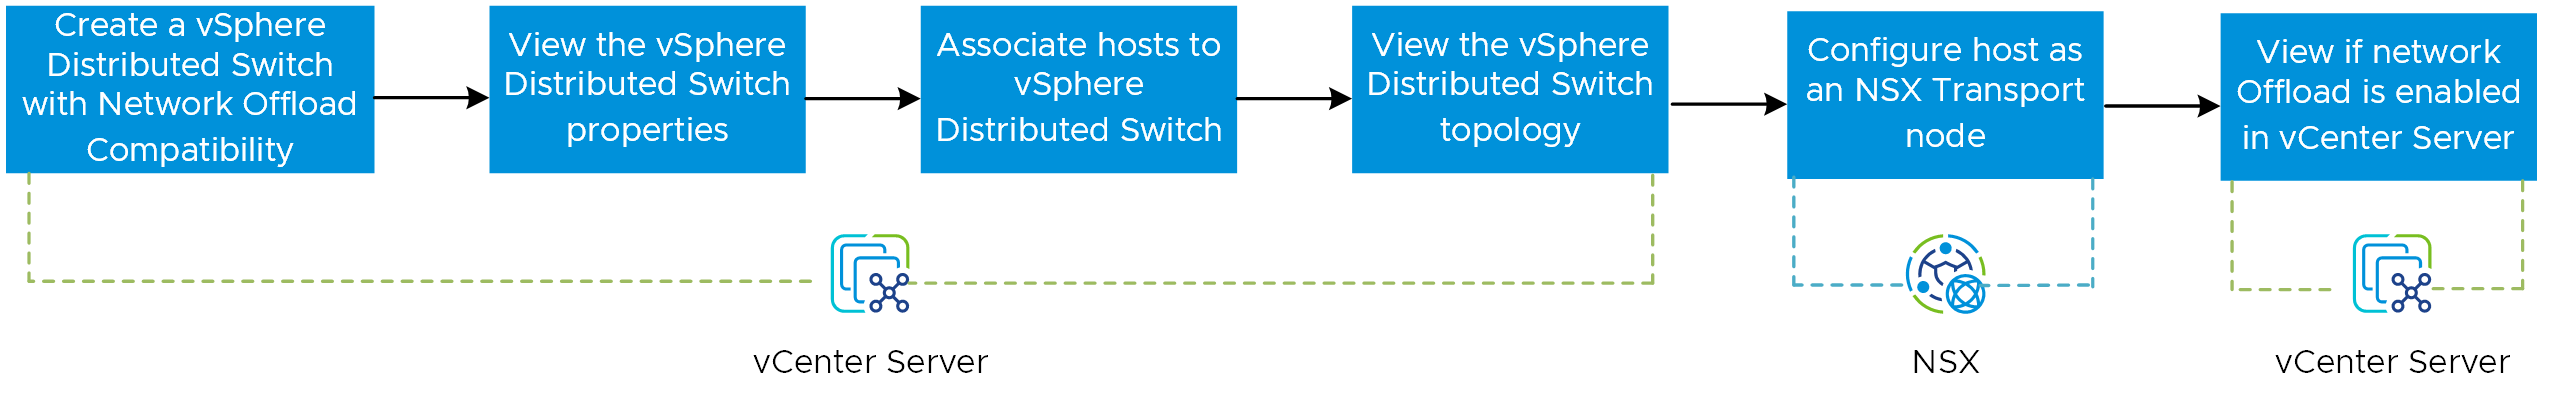 L'immagine illustra il workflow per abilitare la funzionalità di offload di rete